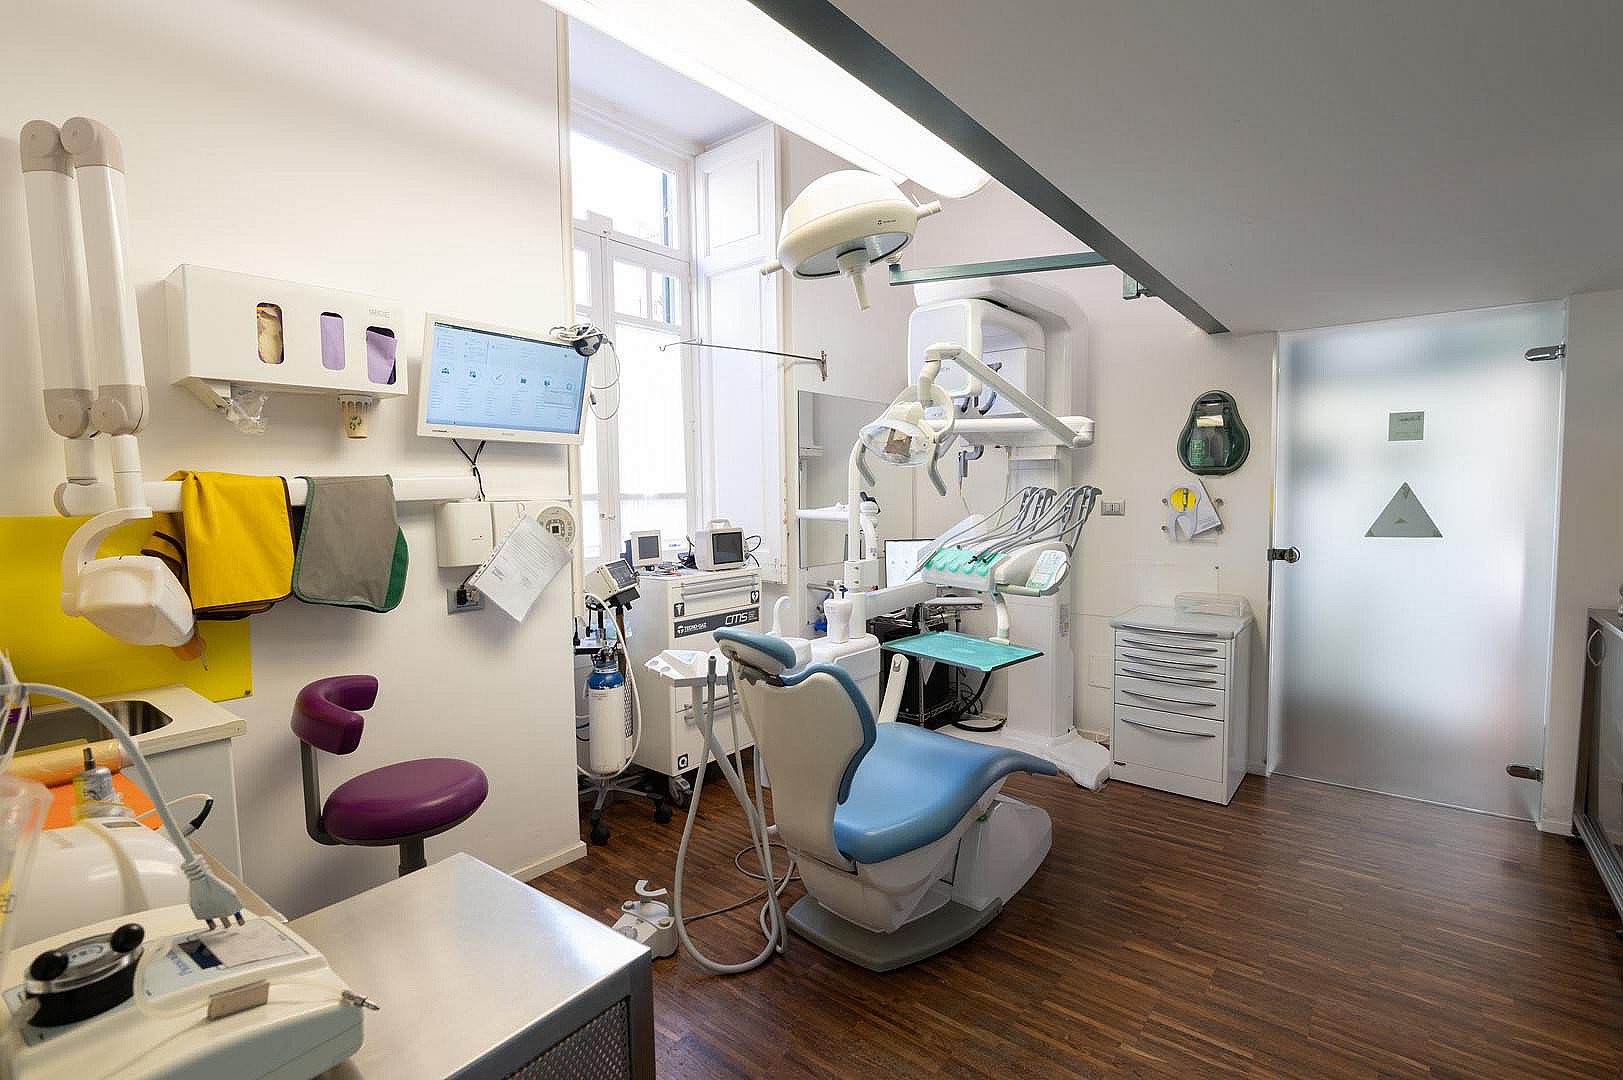 The Excellence - Ambulatorio Odontoiatrico